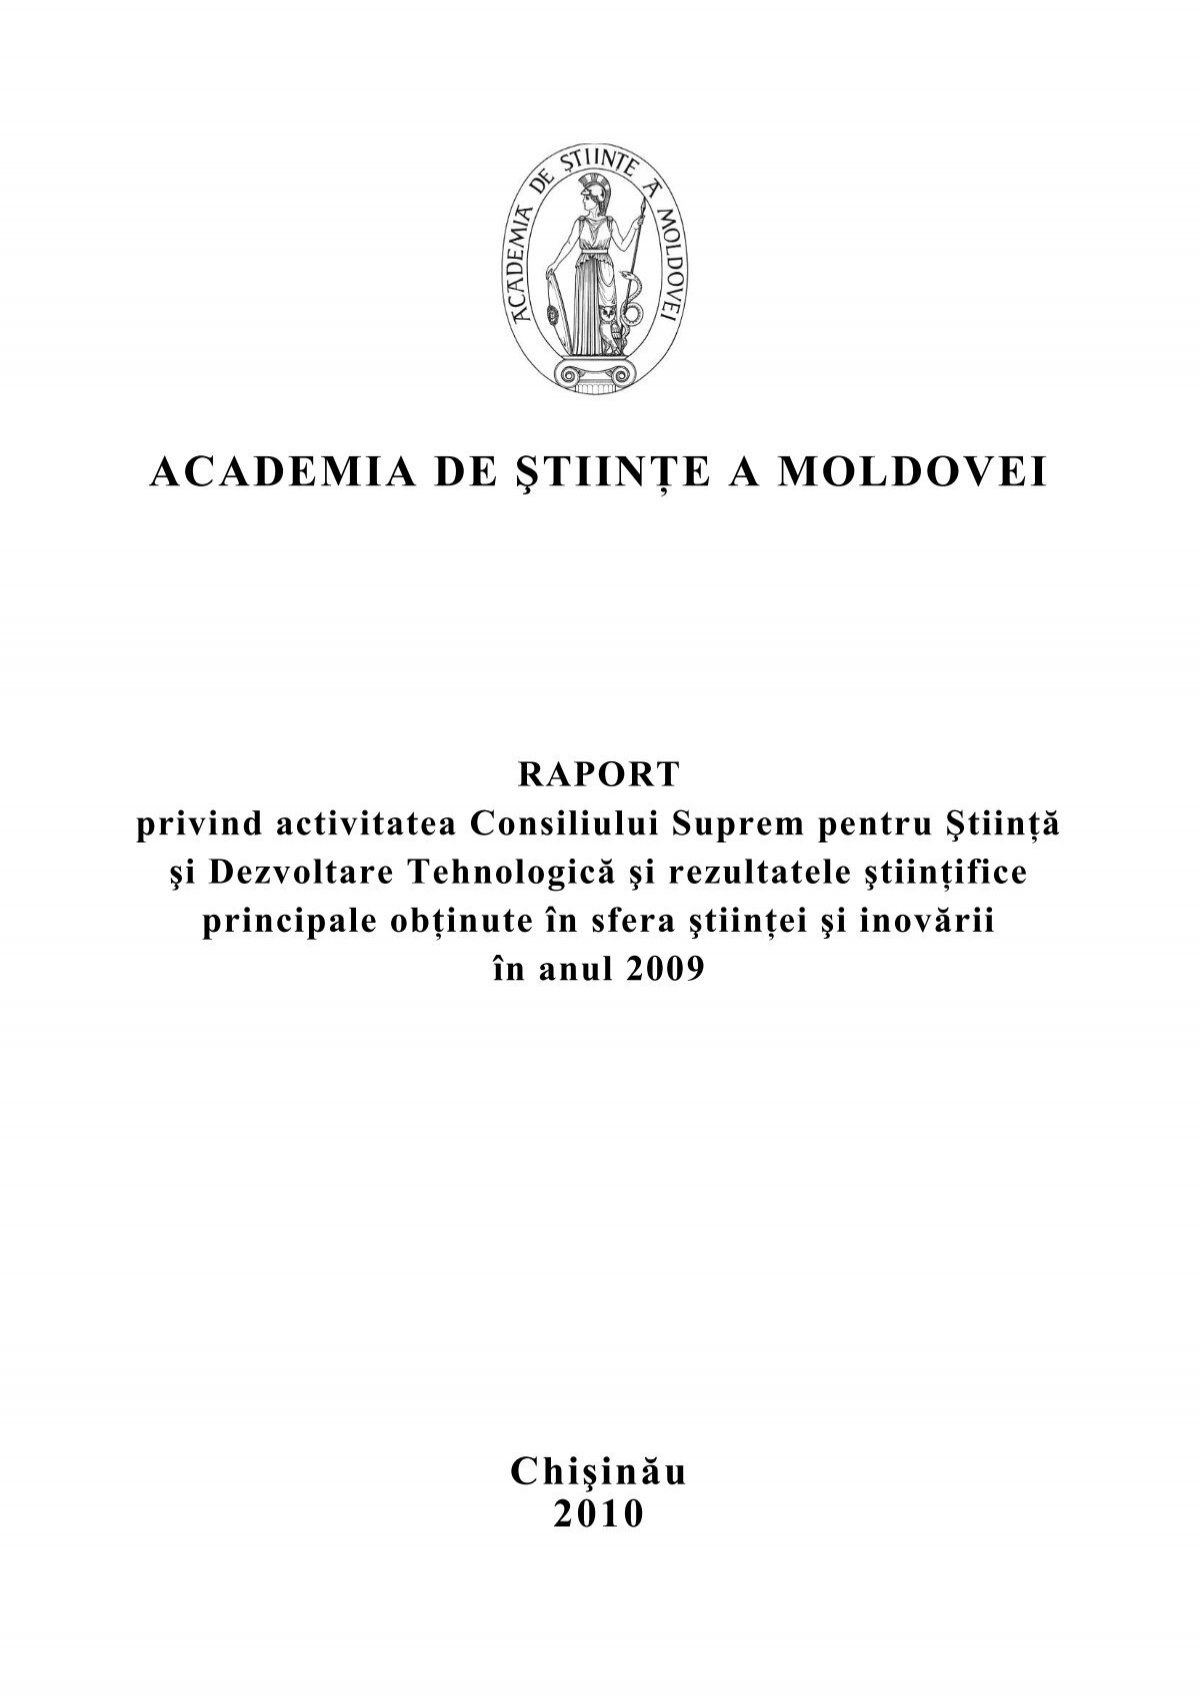 Raport Cssdt 2009 Academia De Stiinţe A Moldovei